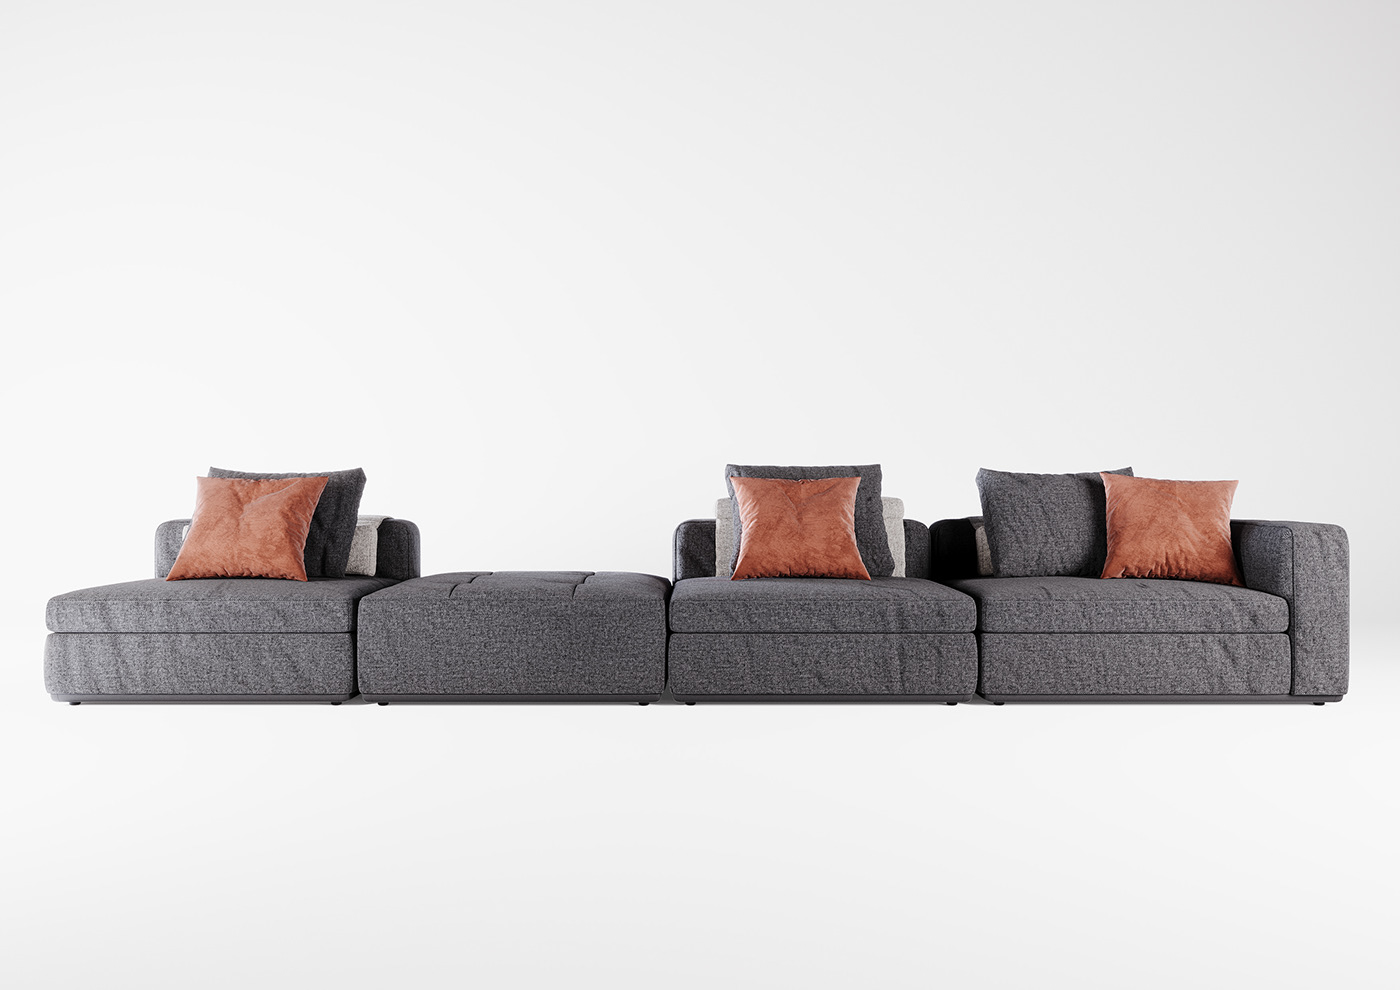 3ds max architecture Brand Design design furniture furniture design  Interior product Render sofa design